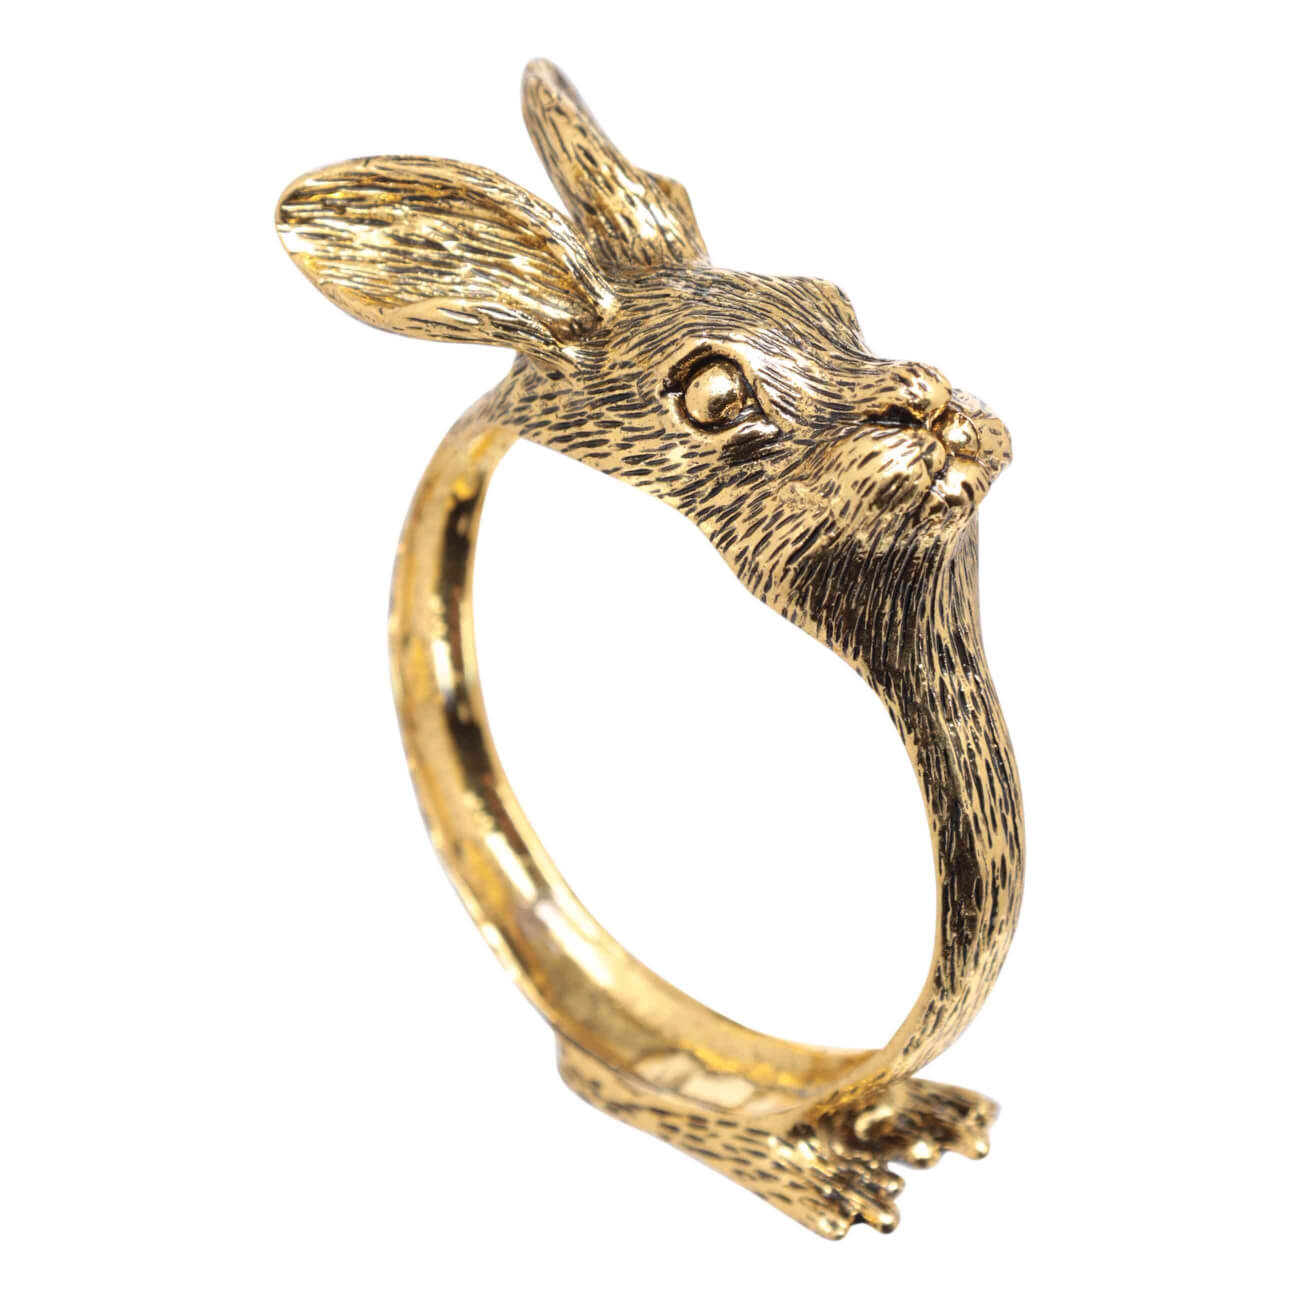 Кольцо для салфеток, 6 см, металл, золотистое, Кролик, Rabbit gold кольцо для салфеток 5 см металл золотистое гранаты с листьями pomegranate